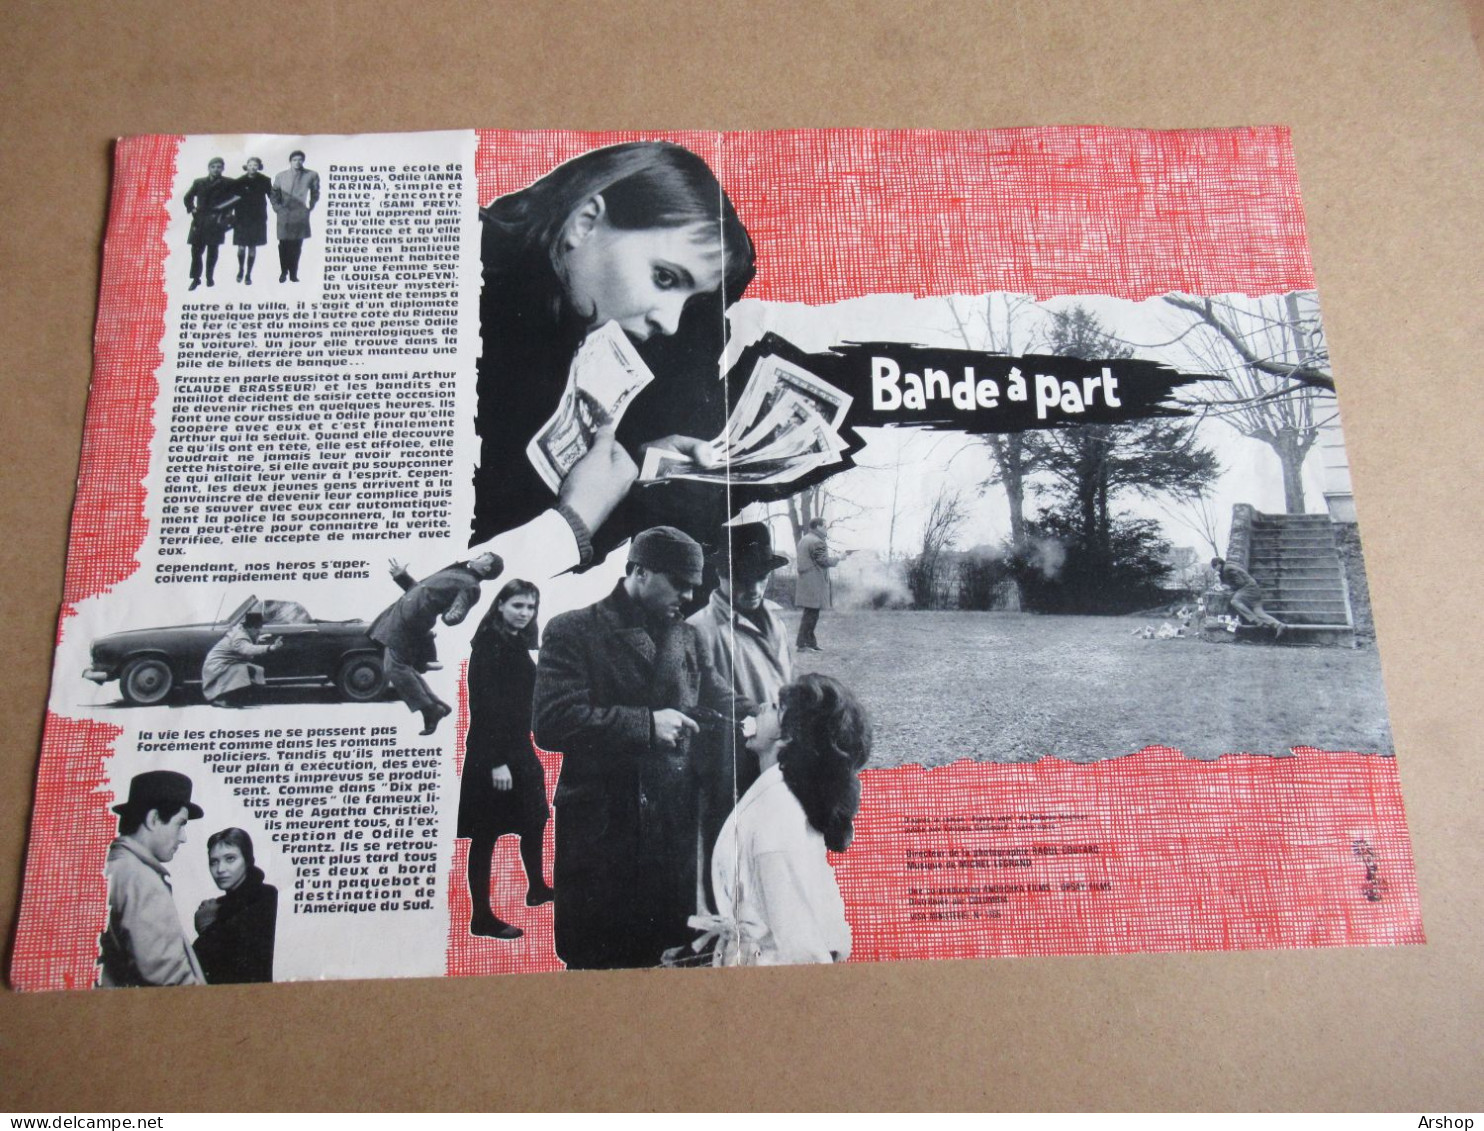 BANDE A PART De JEAN LUC GODARD Avec ANNA KARINA / SAMI FREY / CLAUDE BRASSEUR - PLAQUETTE SYNOPSIS Original 1964 Déplia - Publicité Cinématographique